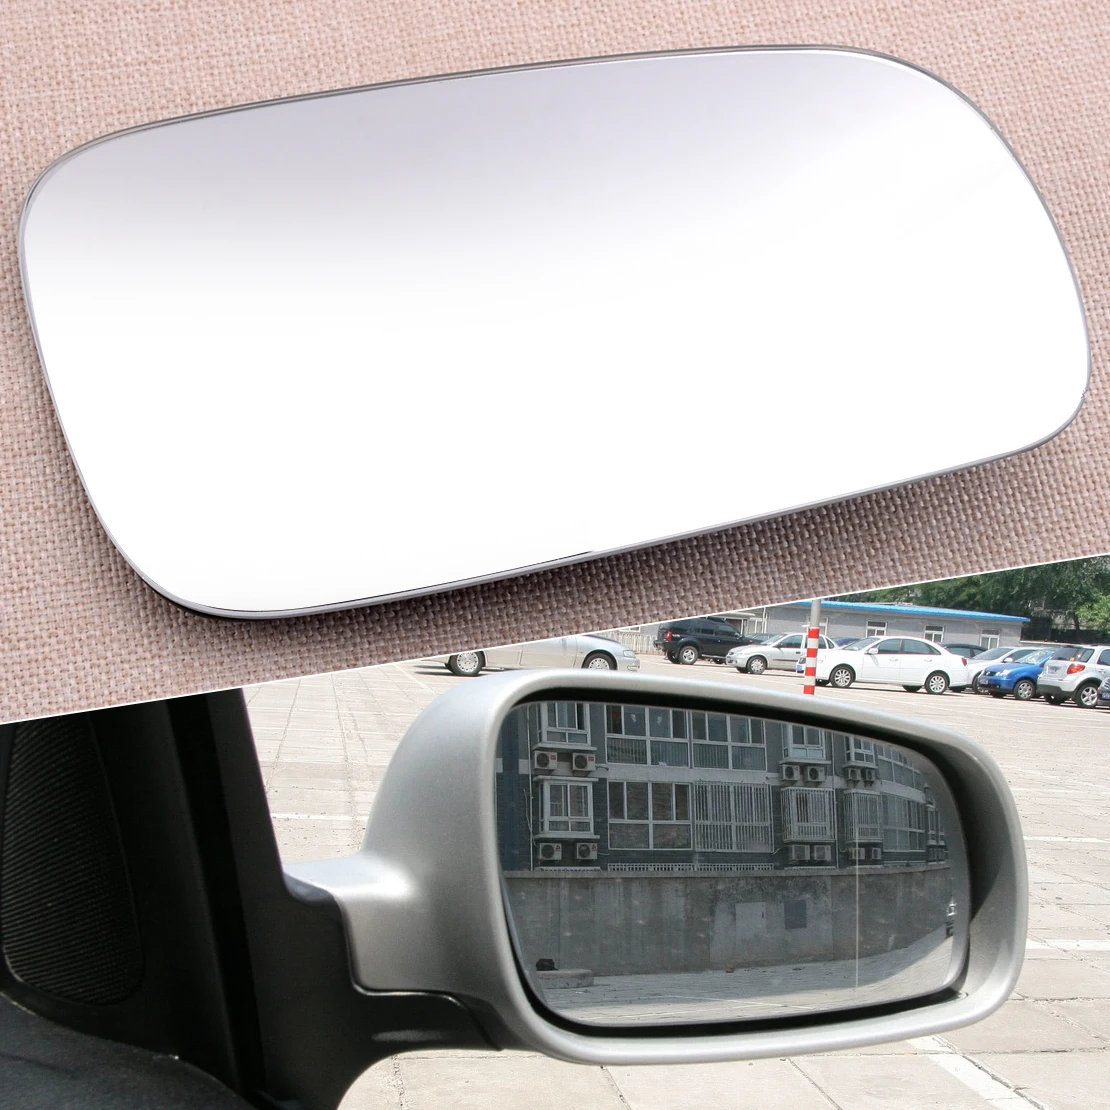 

Car 1J1857522 Right Side Heated Rearview Mirror Glass Fit for VW Jetta Golf MK4 Passat B5 Bora 1999-2001 2002 2003 2004 2005